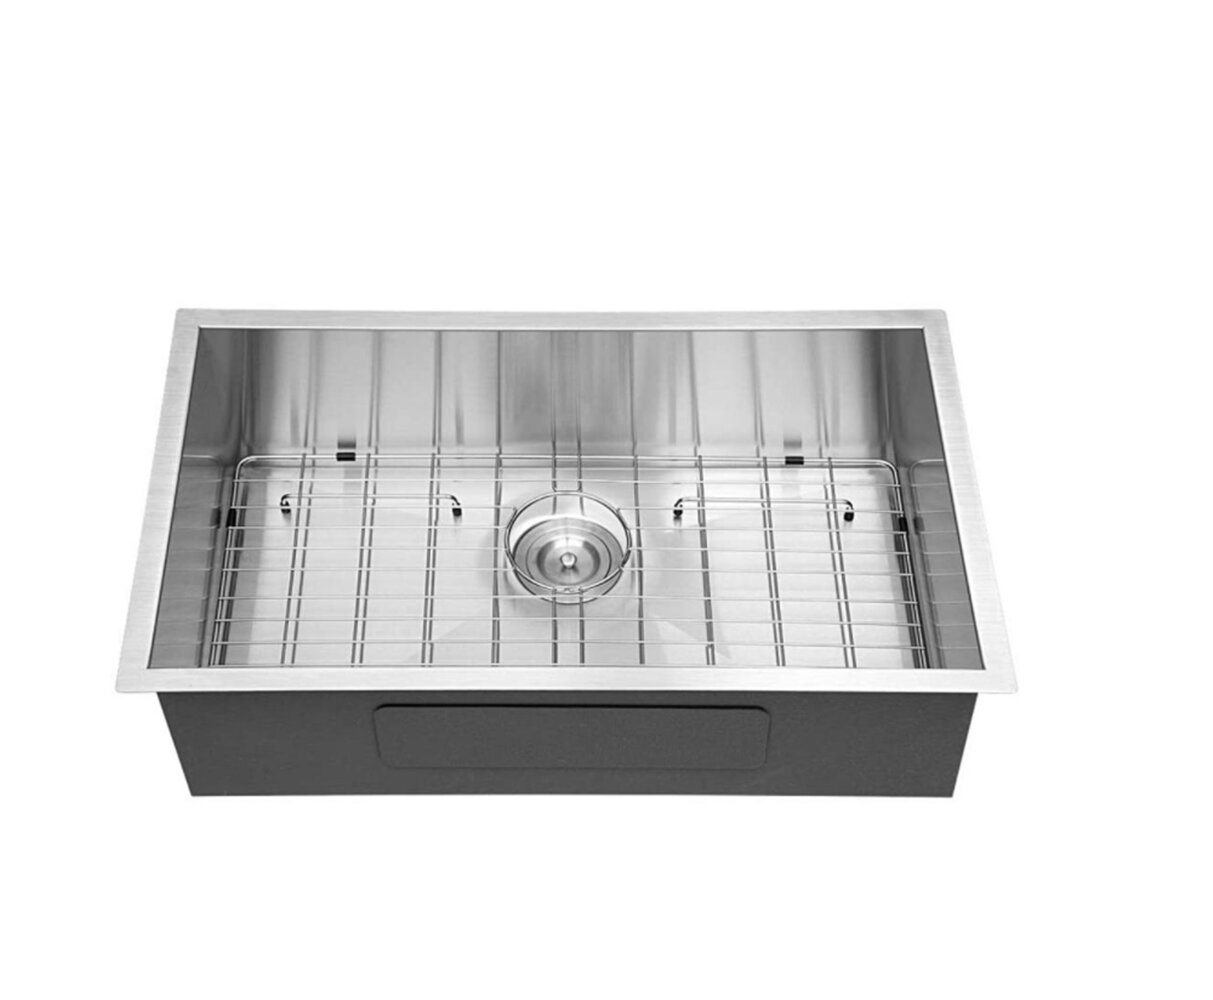 33 x 19 stainless steel kitchen sink 18 gauge